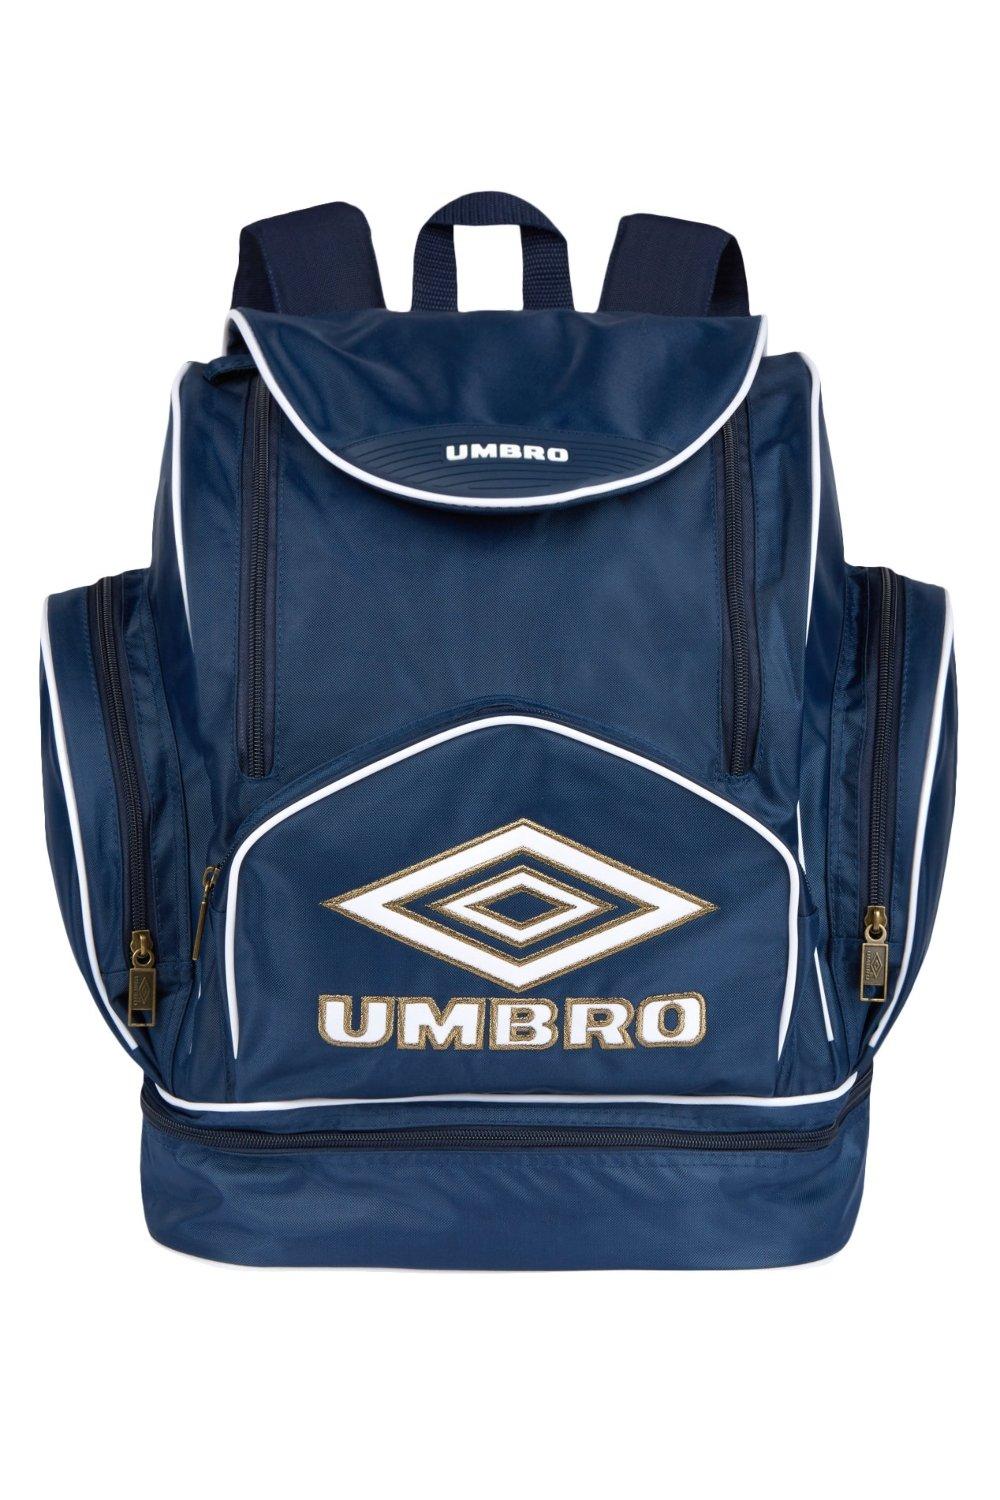 Umbro Bag Red/ Blue Soccer Athletic Sac Backpack Bag 18” Length / 14” Width  | eBay